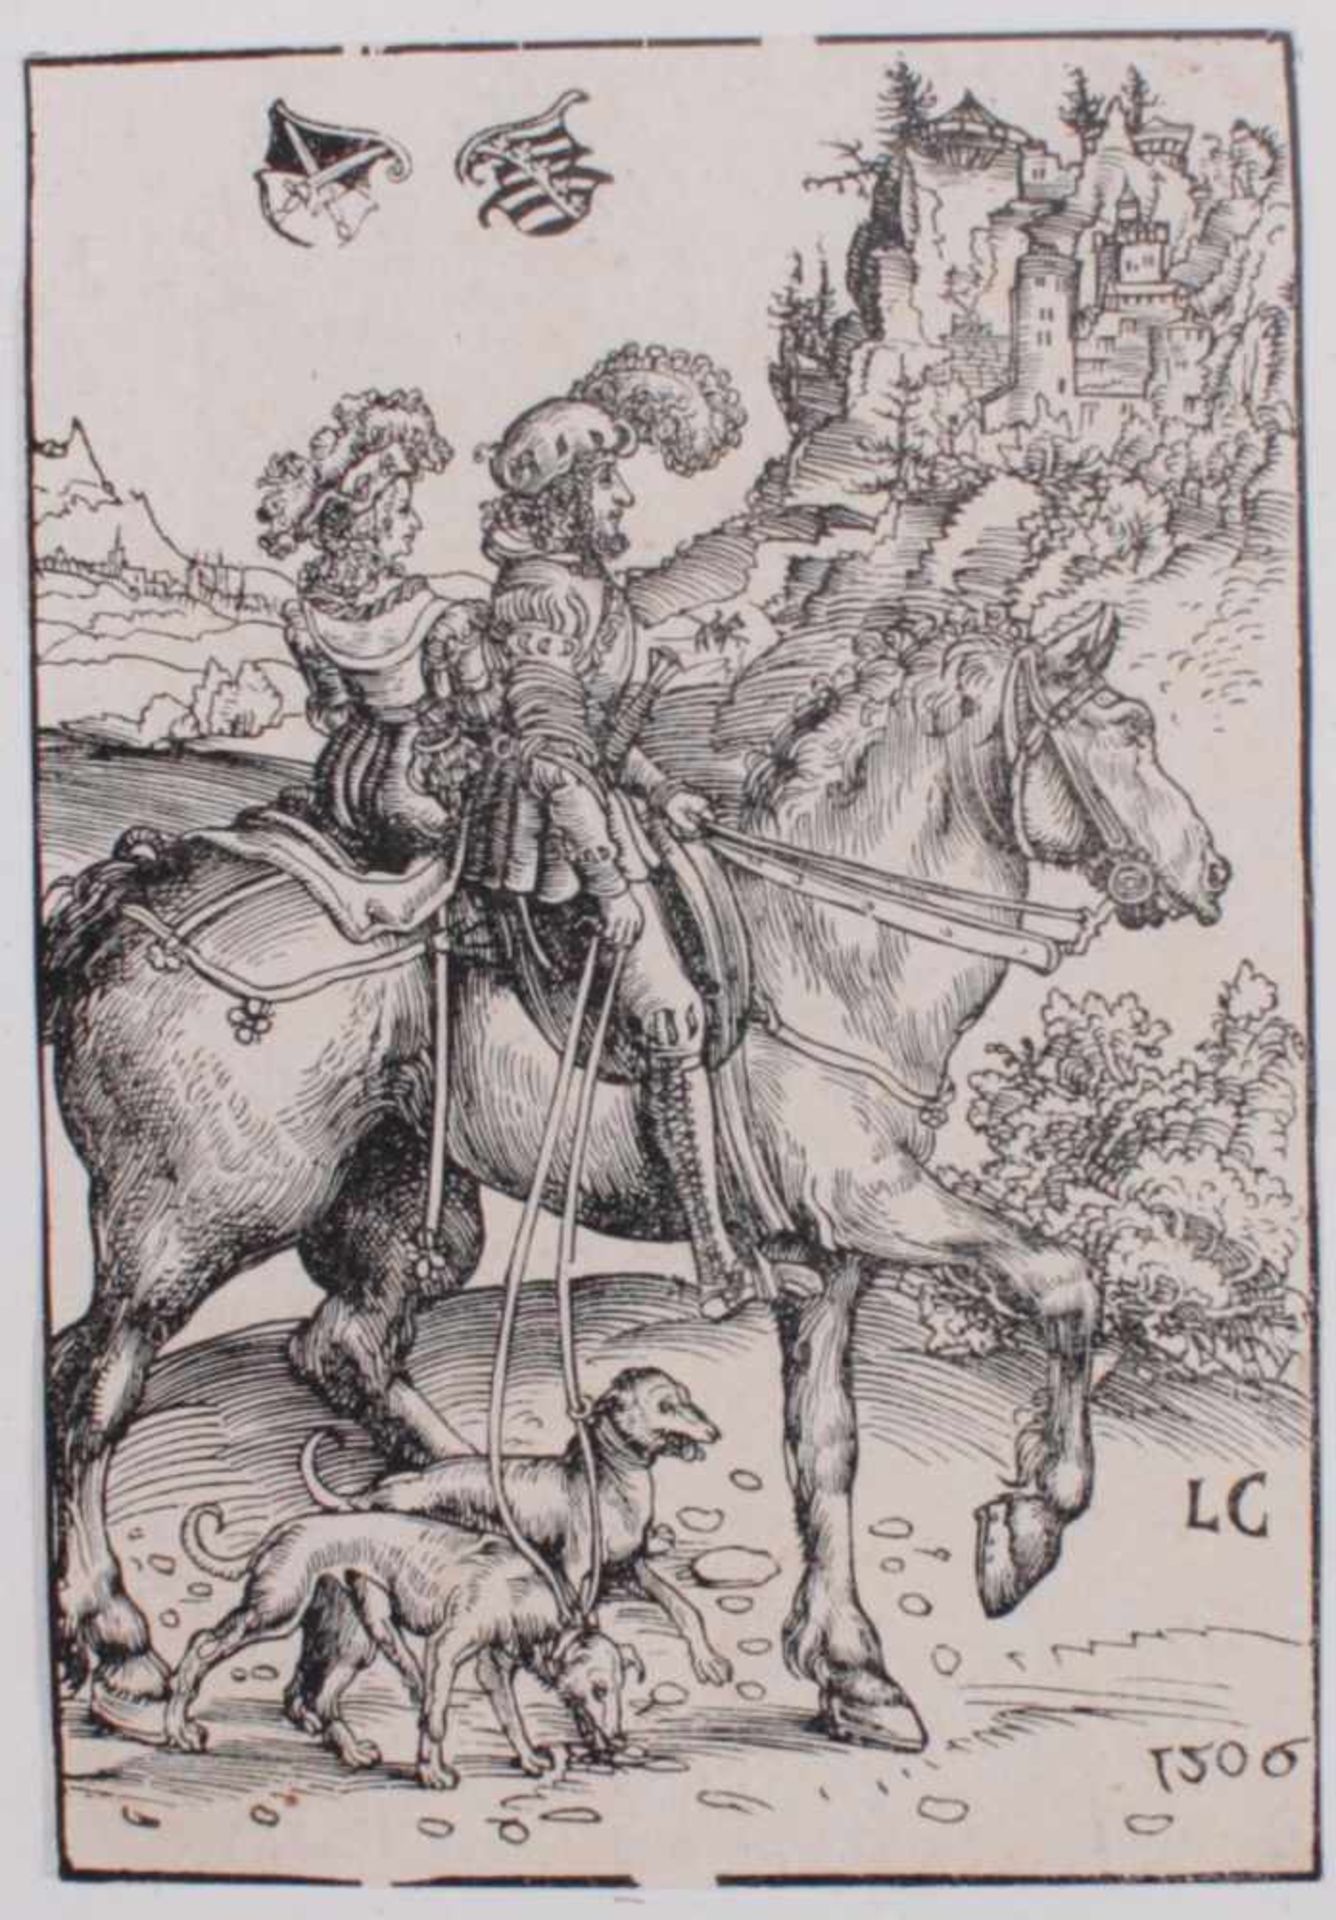 Lucas Cranach d. Ä. (1472 Kronach - Weimar 1553)Fürst mit seiner Dame zu Roß. 1506. Holzschnitt, ca.